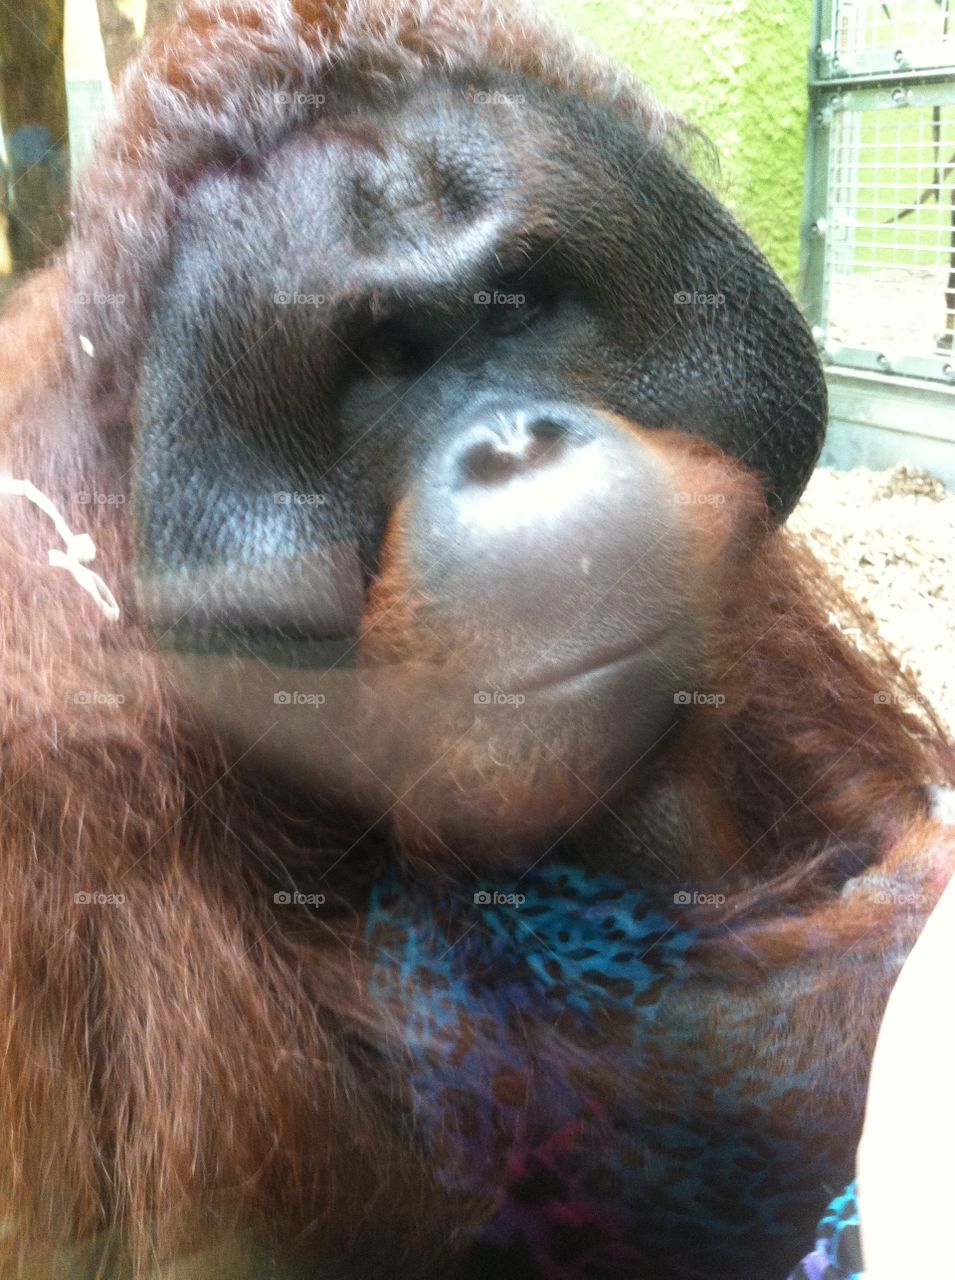 Orangutan. Oragutan in a zoo drew him close